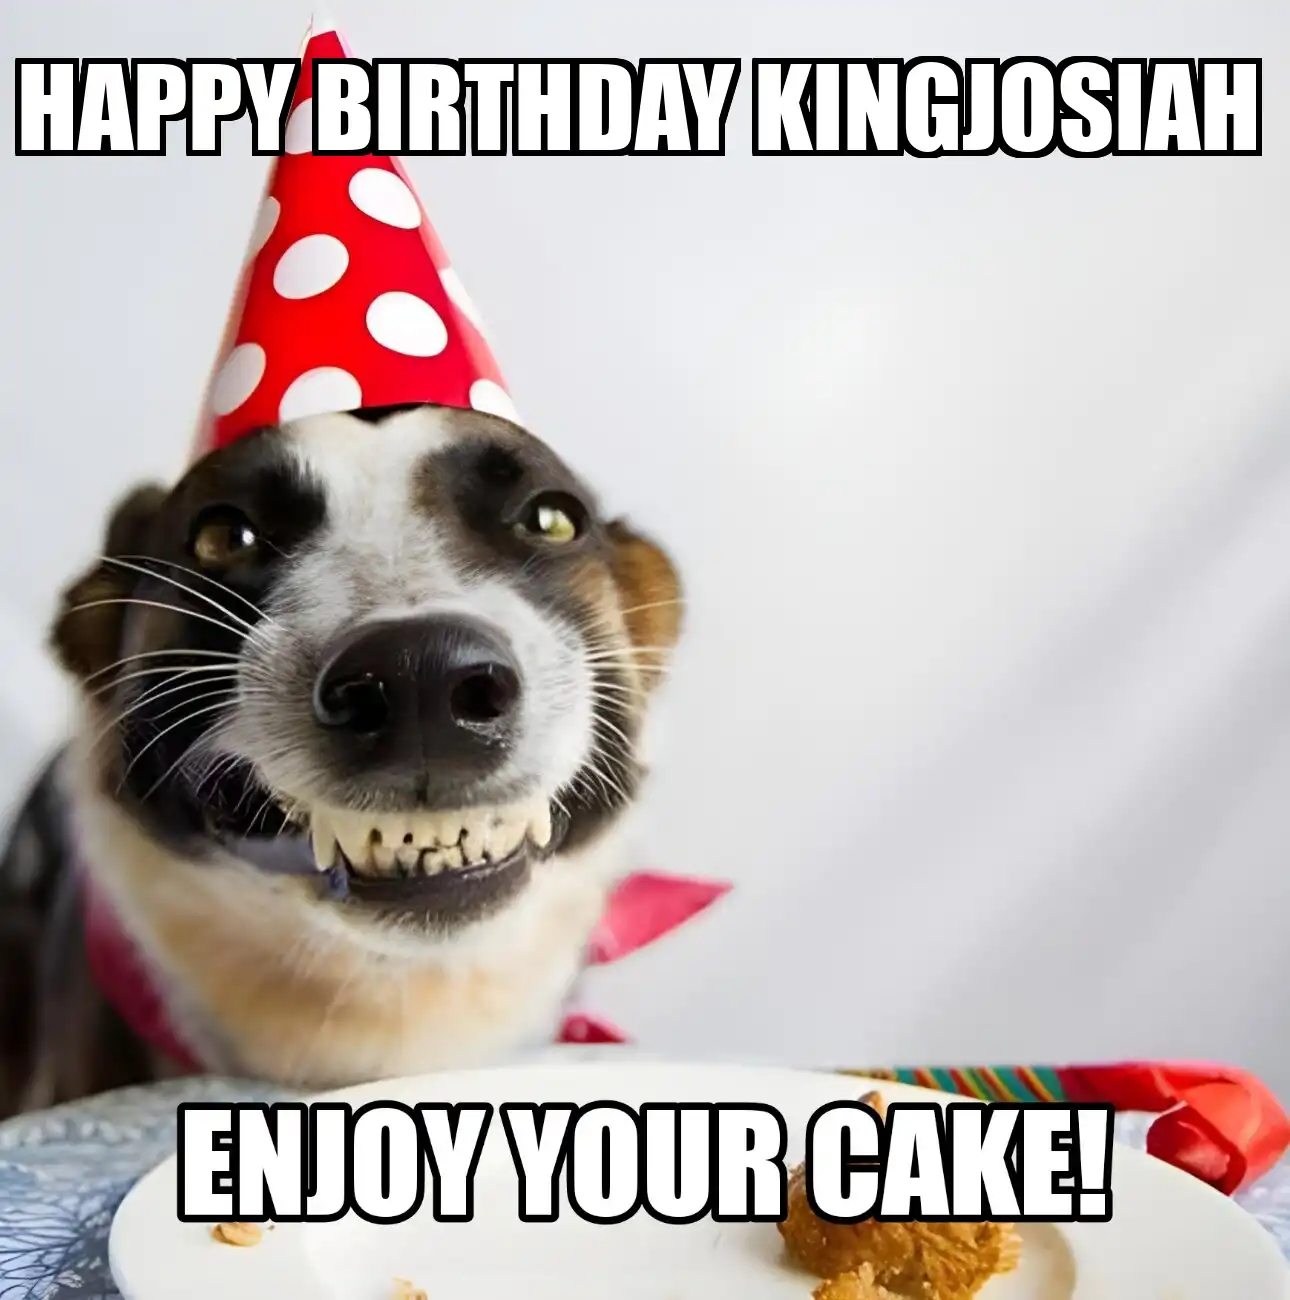 Happy Birthday Kingjosiah Enjoy Your Cake Dog Meme